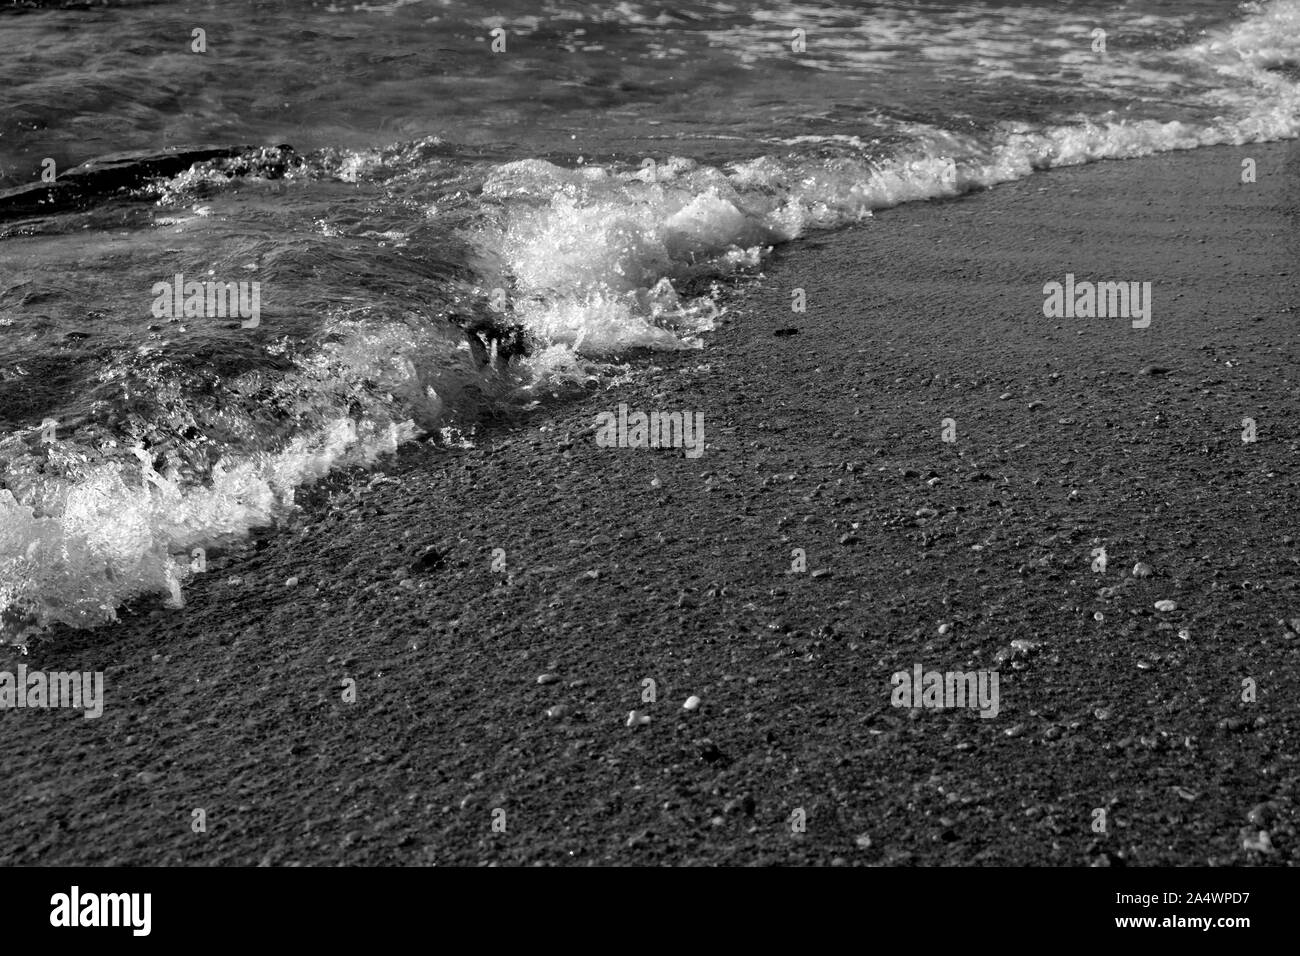 Sommer Hintergrund der heißen Sand mit Blick aufs Meer oder ozean welle Blasen mit Kopie Raum für Karte oder Werbung bei Sonnenaufgang oder Sonnenuntergang Stockfoto